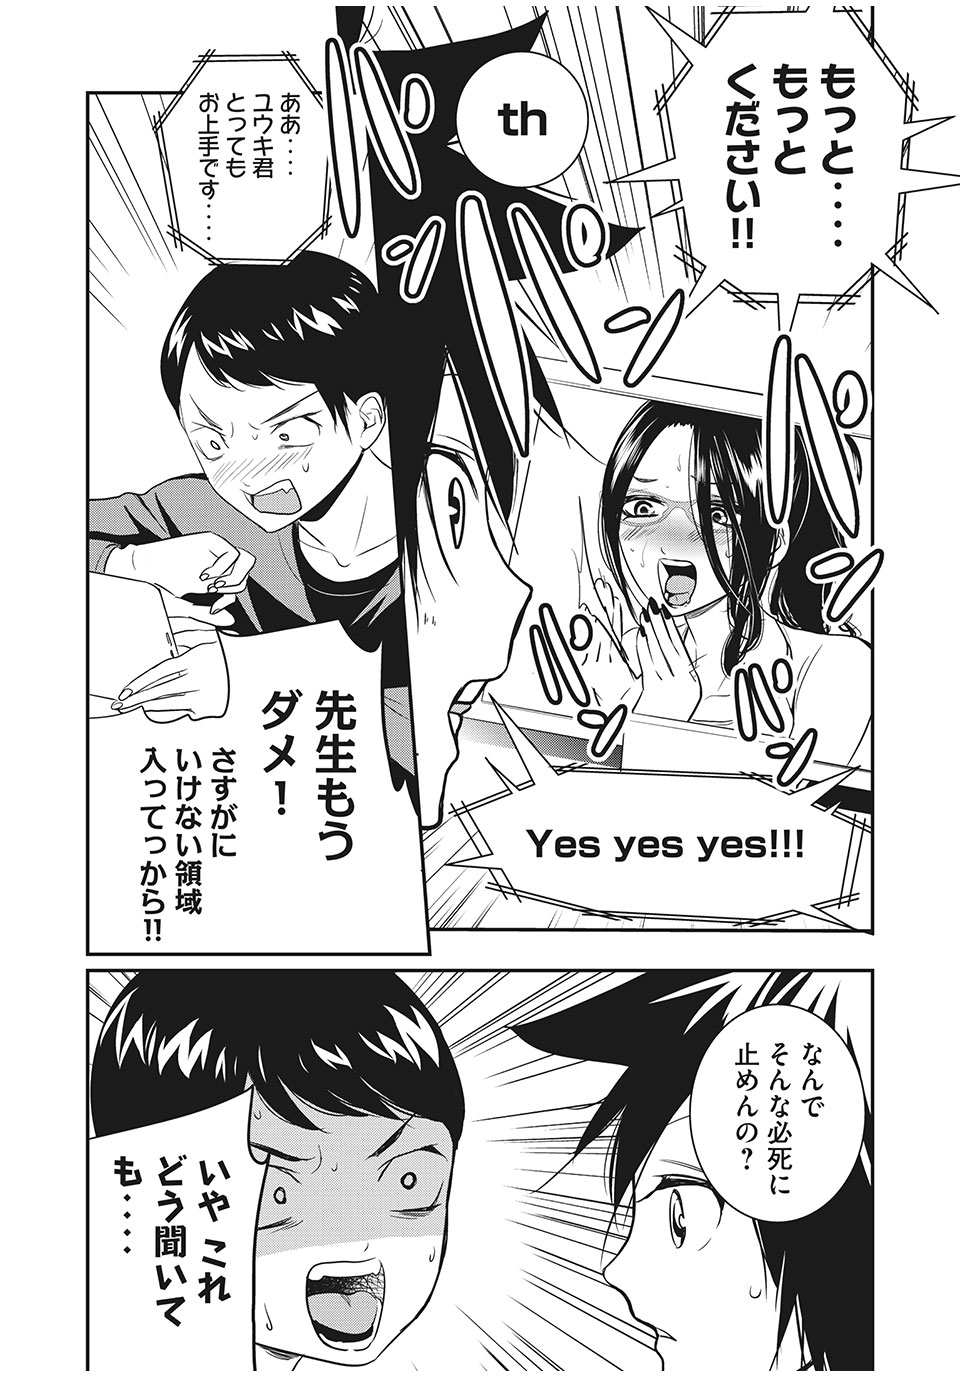 Eigo ×× Sensei - Chapter 19 - Page 8